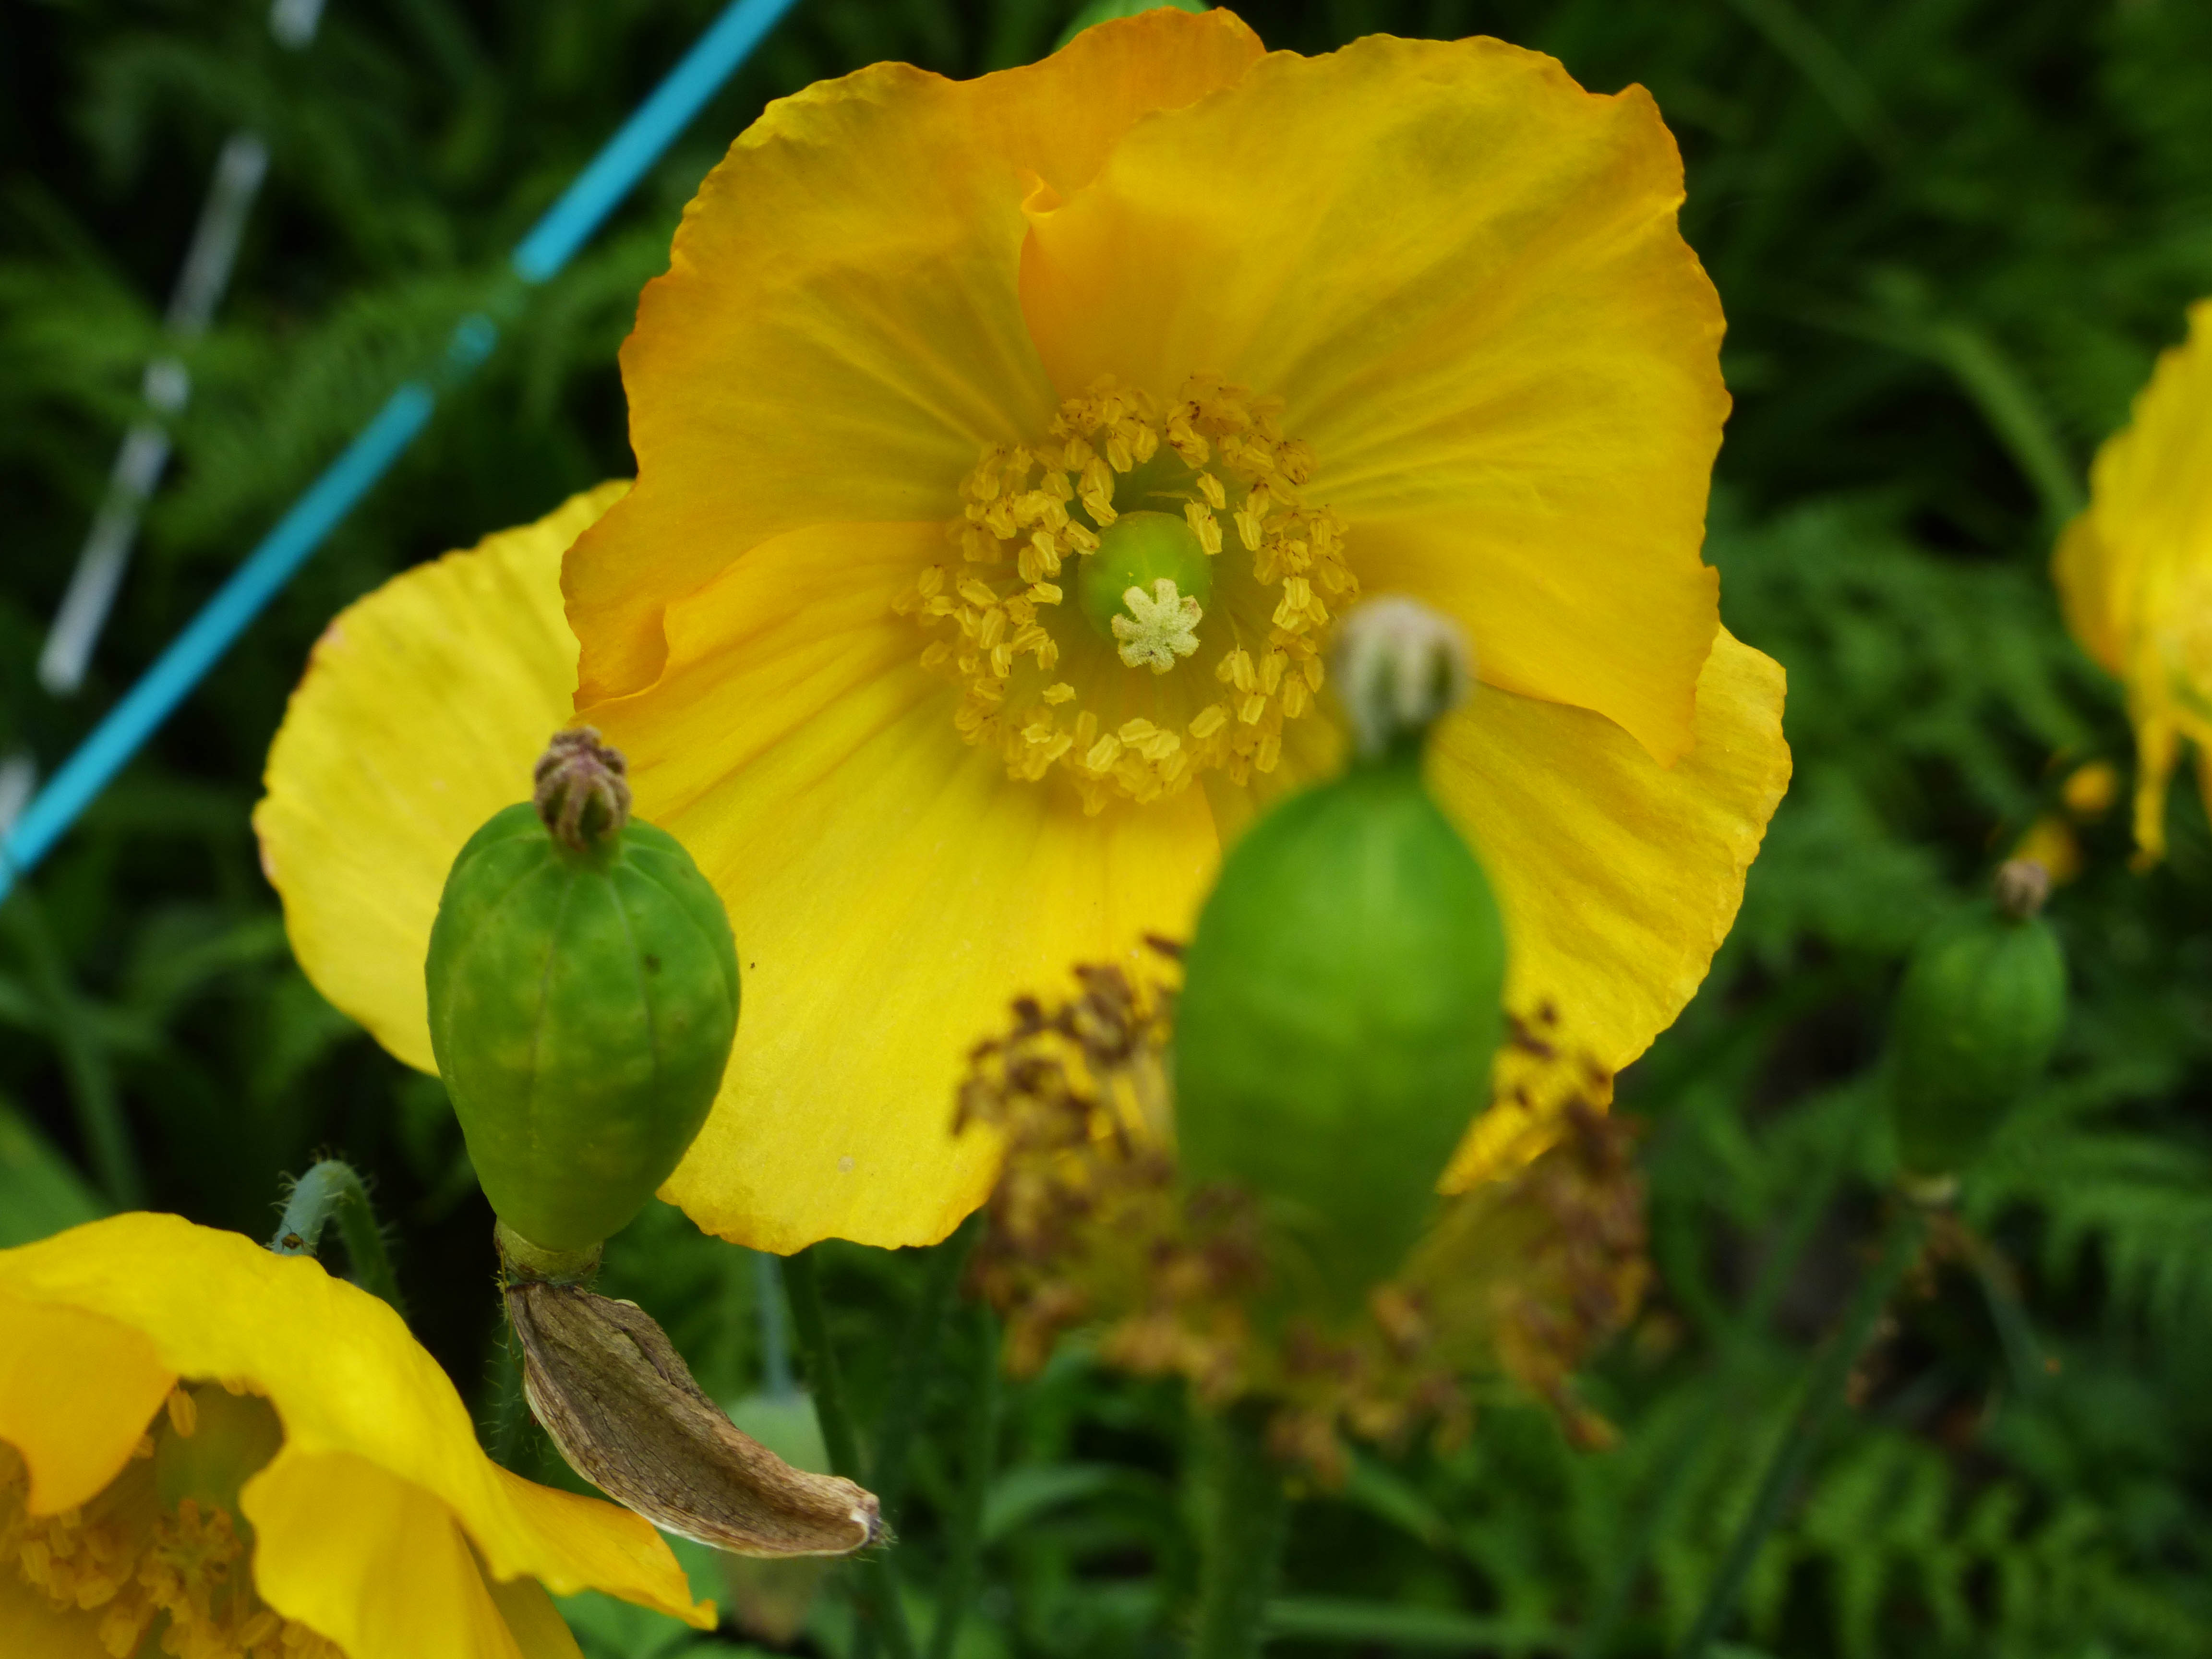 4 - Welsh Poppies in the Garden